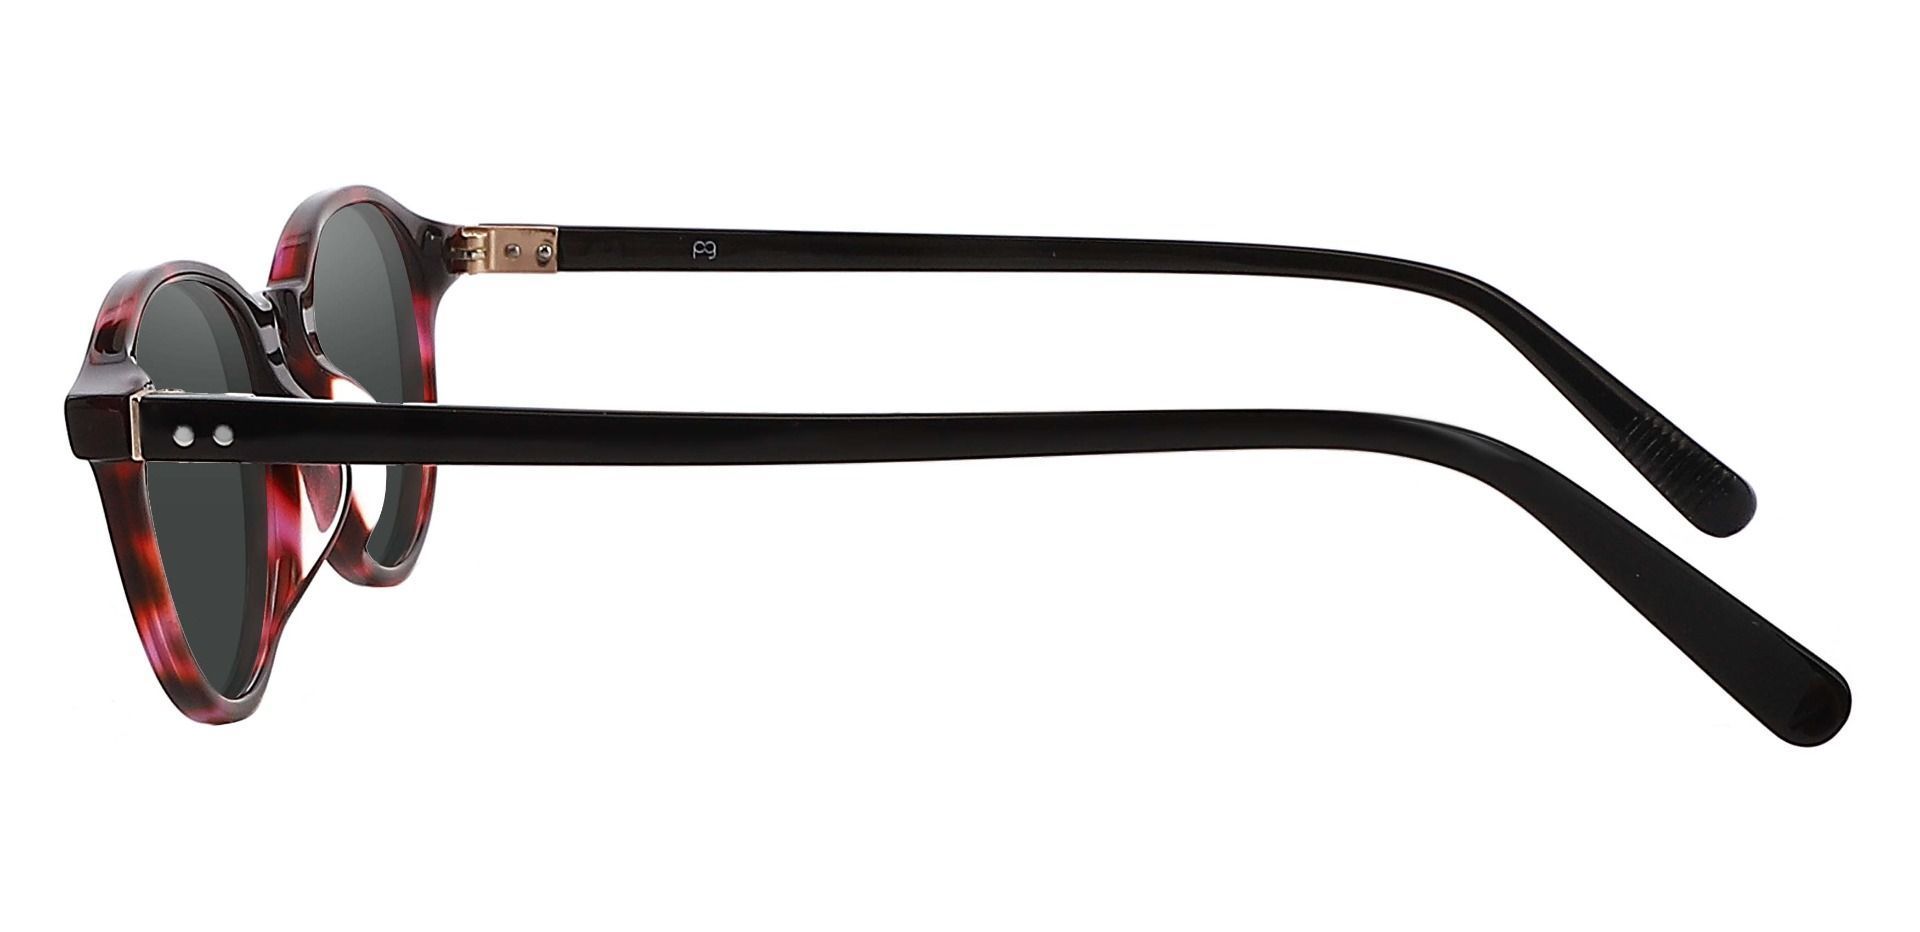 Avon Oval Progressive Sunglasses - Tortoise Frame With Gray Lenses